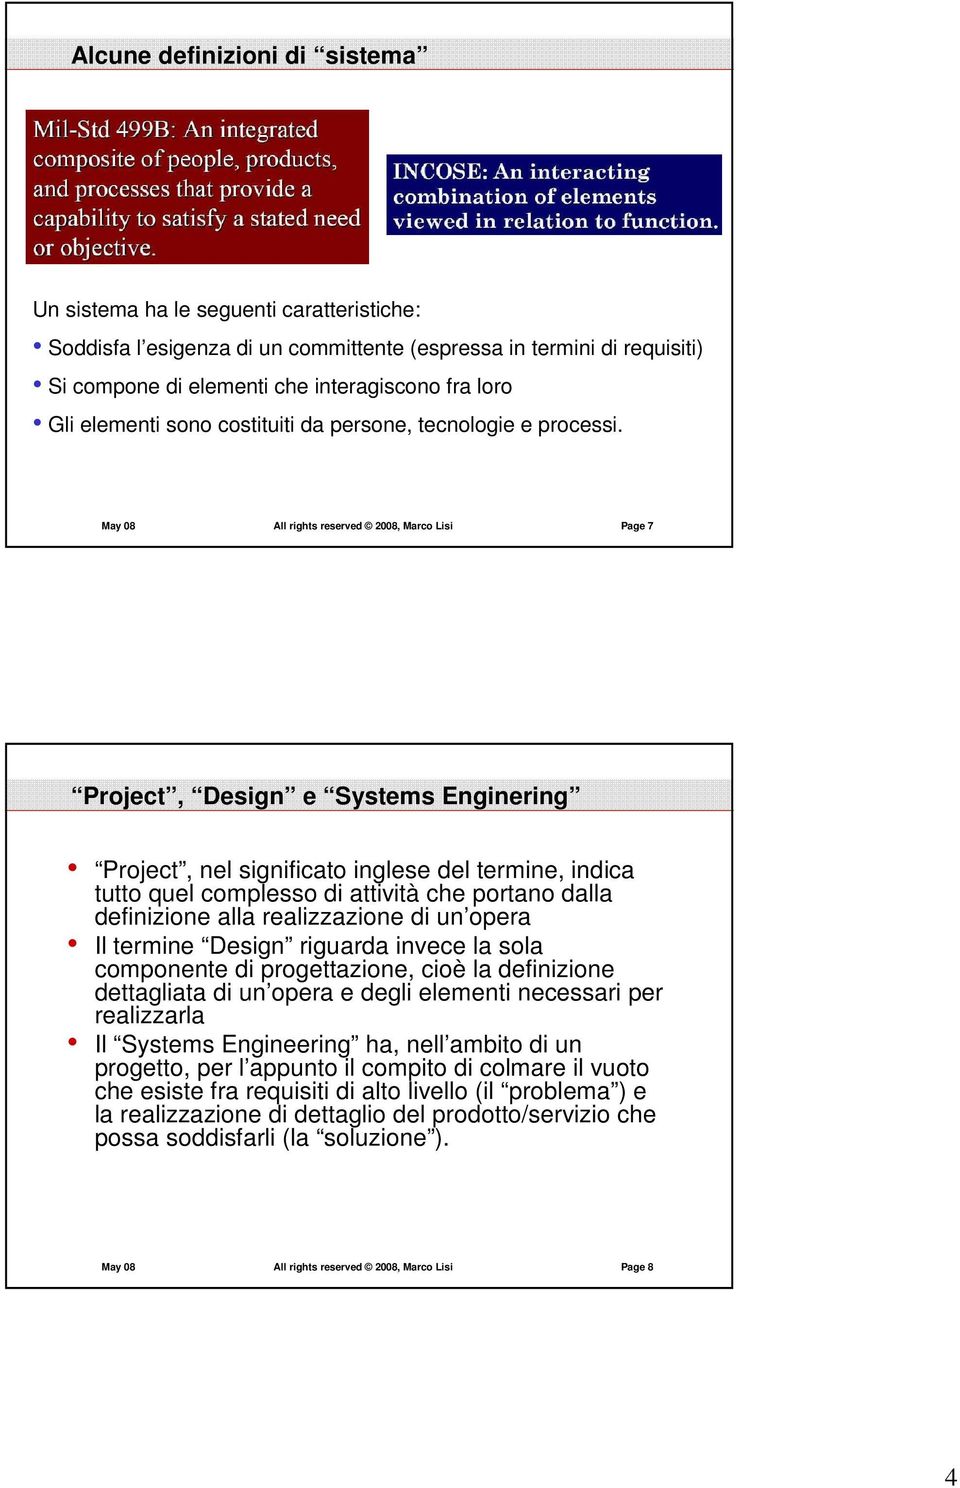 May 08 All rights reserved 2008, Marco Lisi Page 7 Project, Design e Systems Enginering Project, nel significato inglese del termine, indica tutto quel complesso di attività che portano dalla